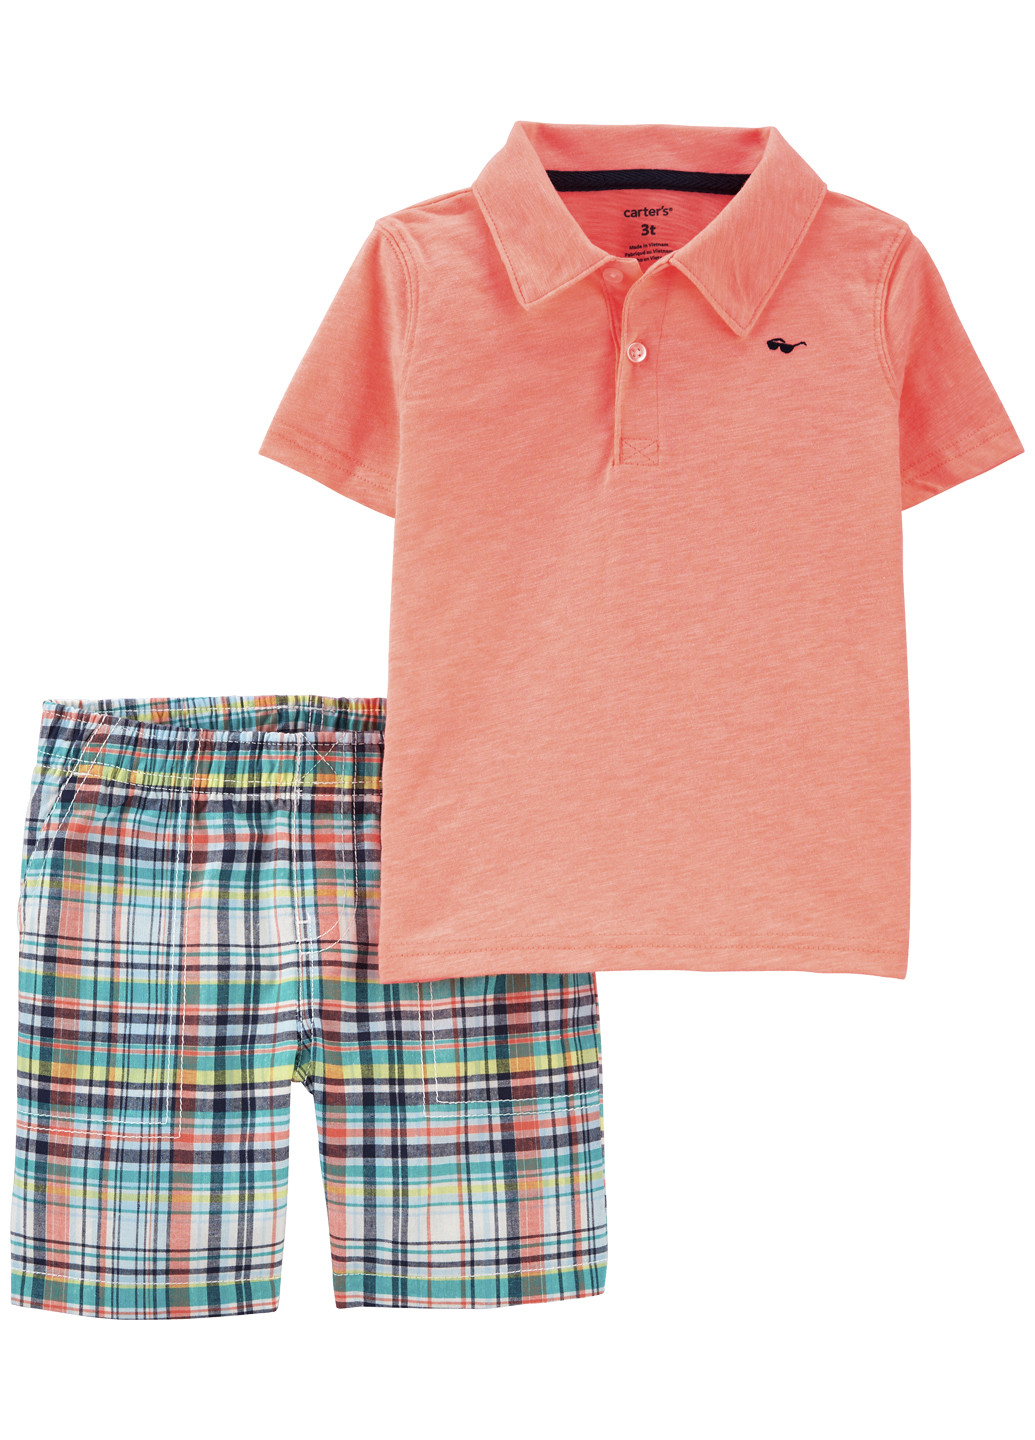 Кислотно-оранжевый летний костюм для мальчика Carter's